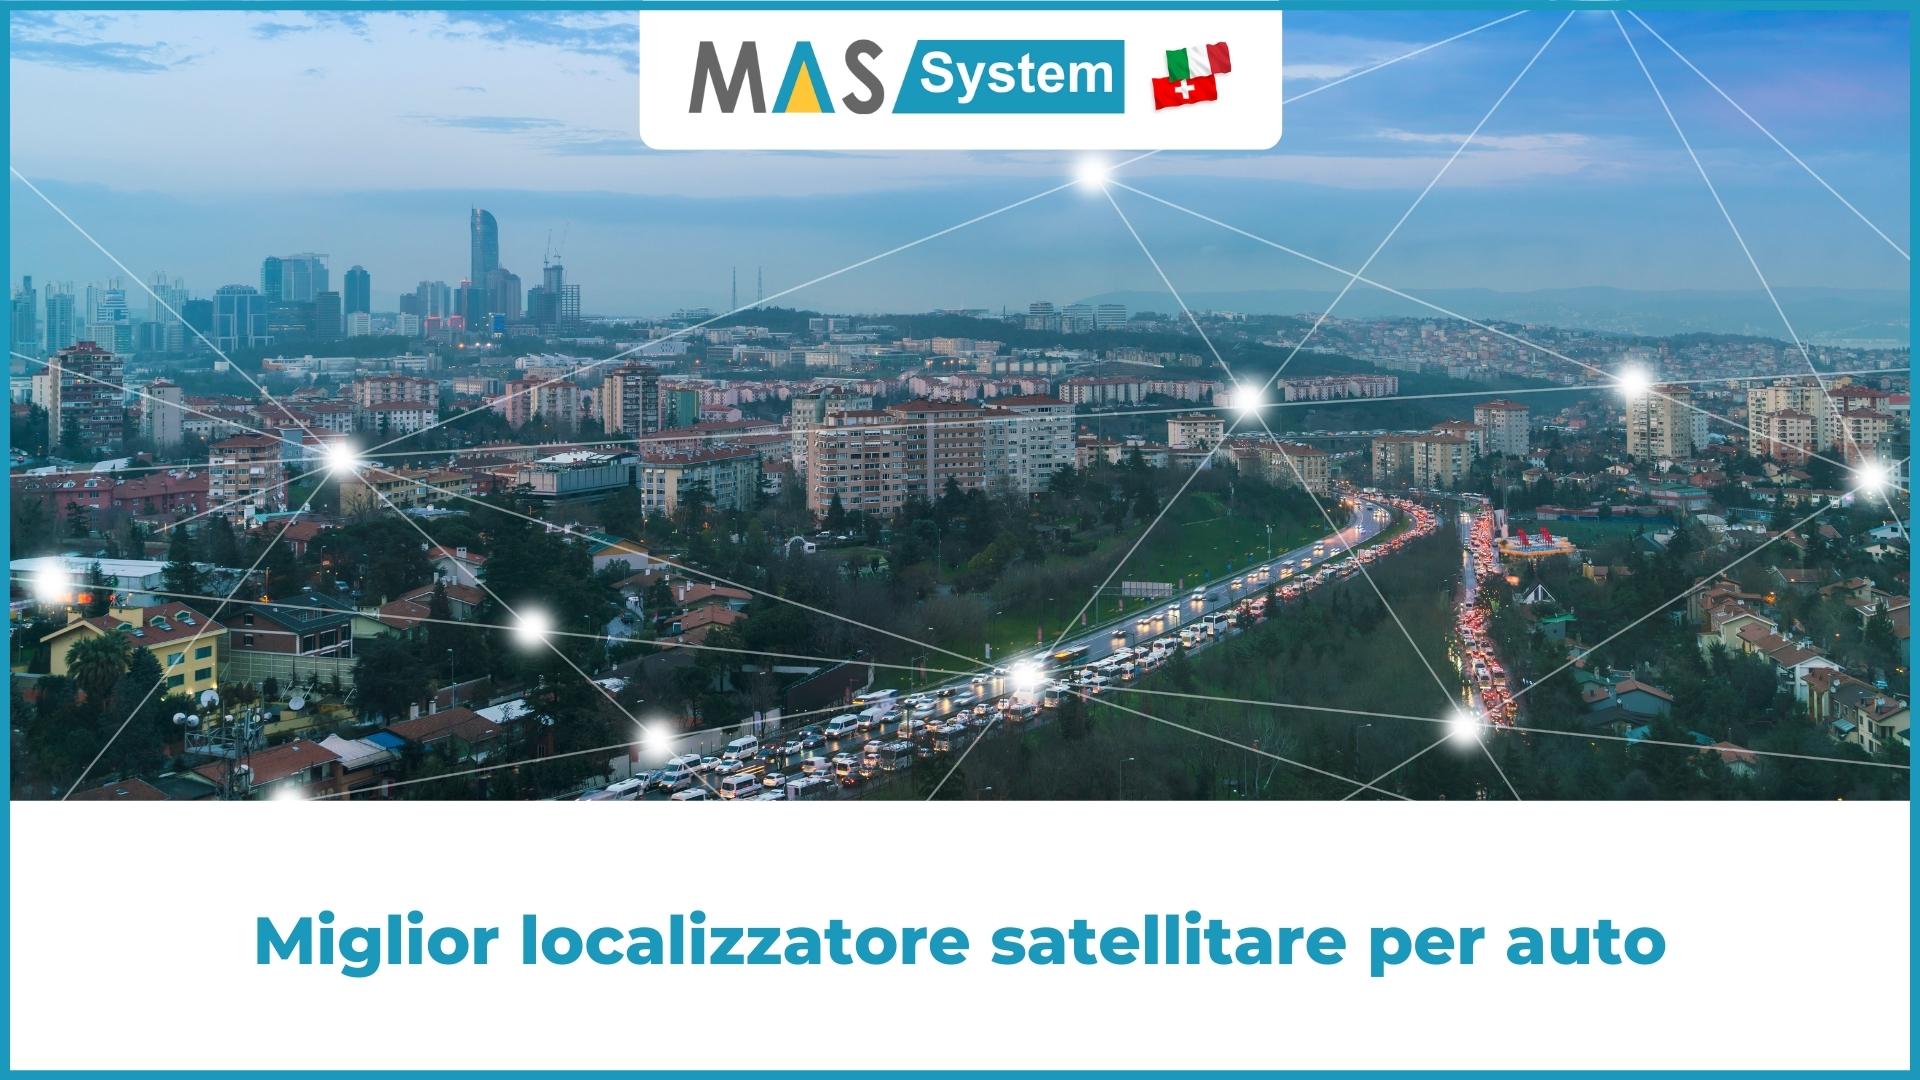 Miglior localizzatore satellitare per auto | Mas System